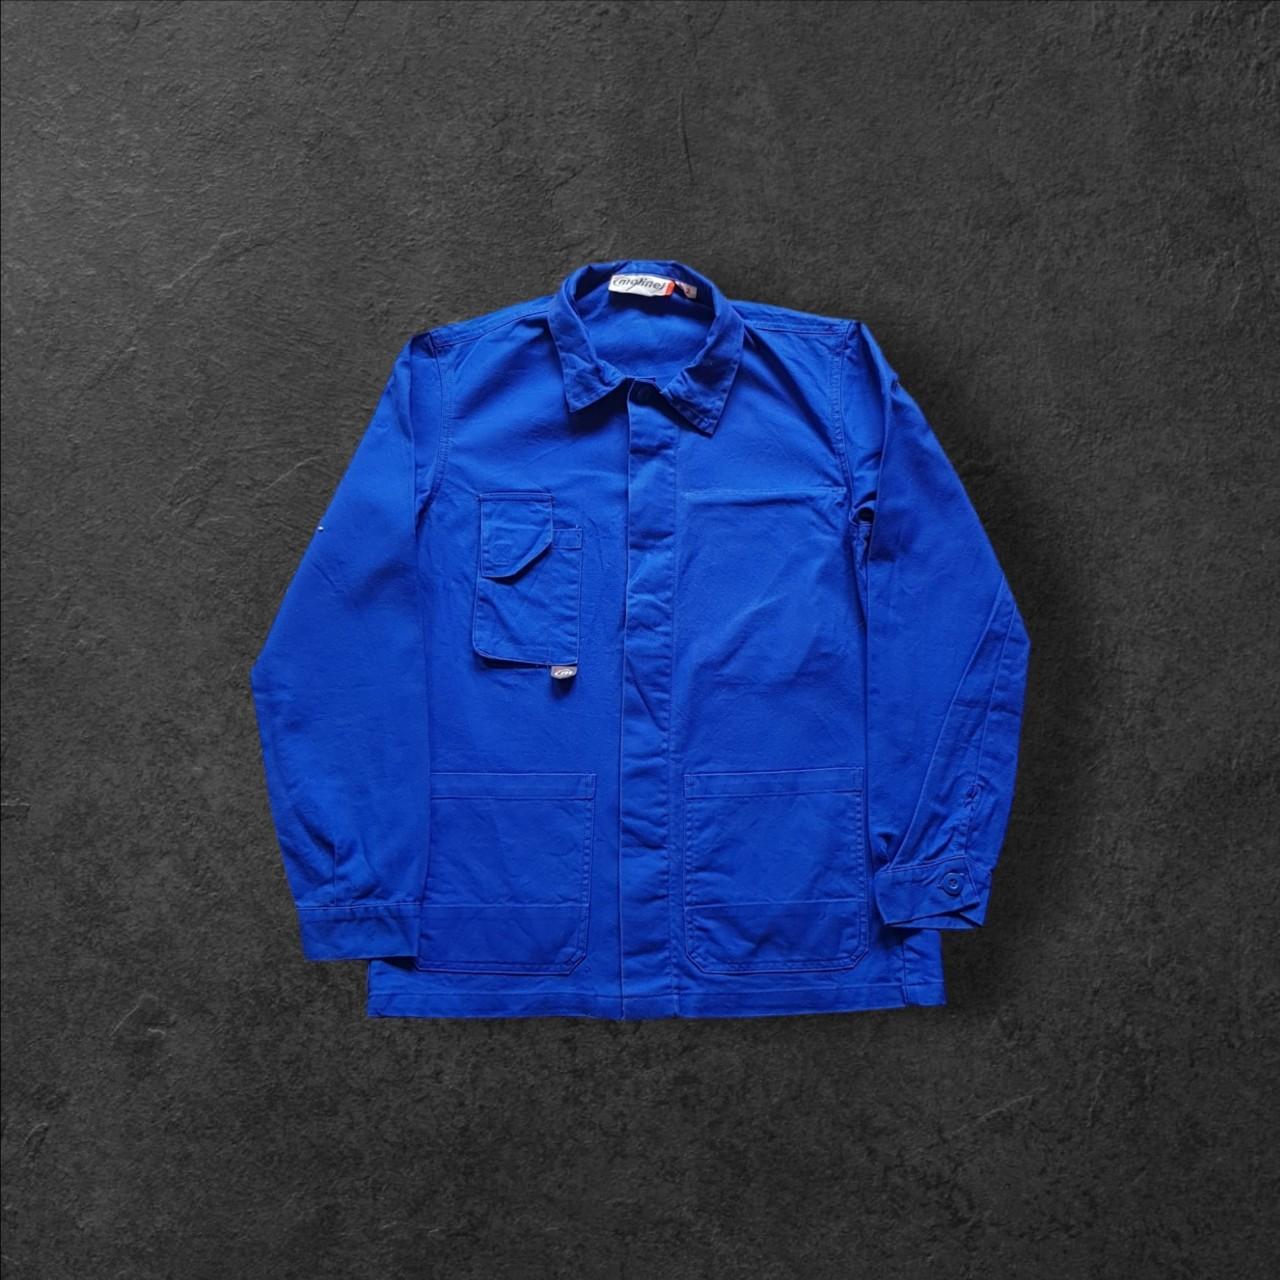 Vintage molinel french royal blue chore work shirt jacket